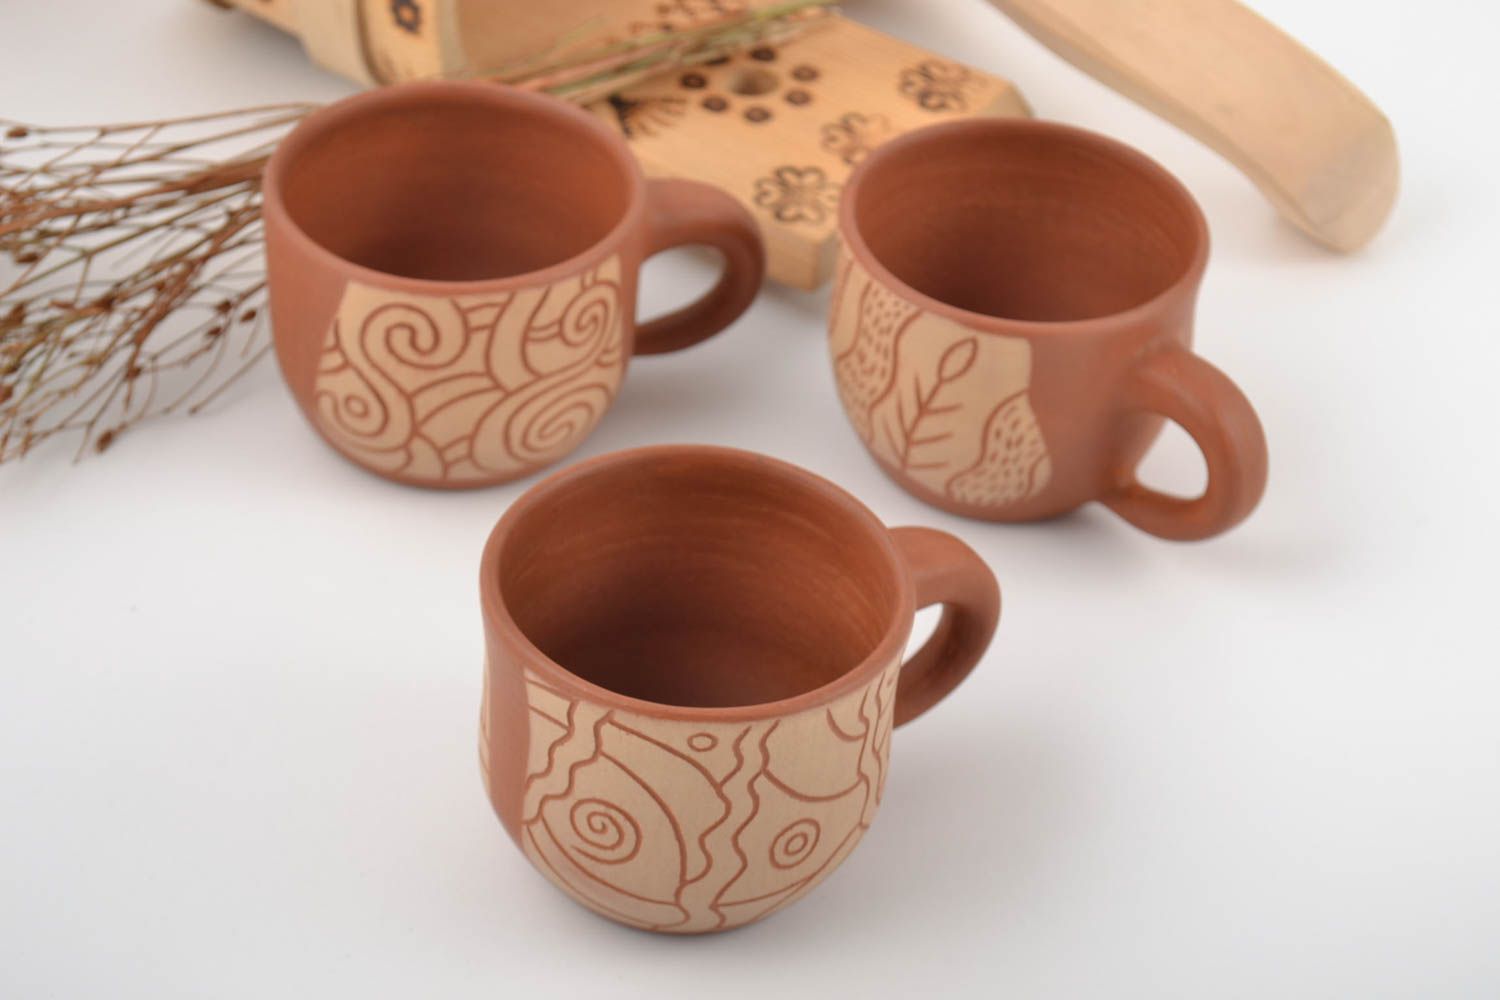 Handmade Tassen aus Ton mit Mineralfarben Engoben bemalt in Braun 3 Stück foto 1